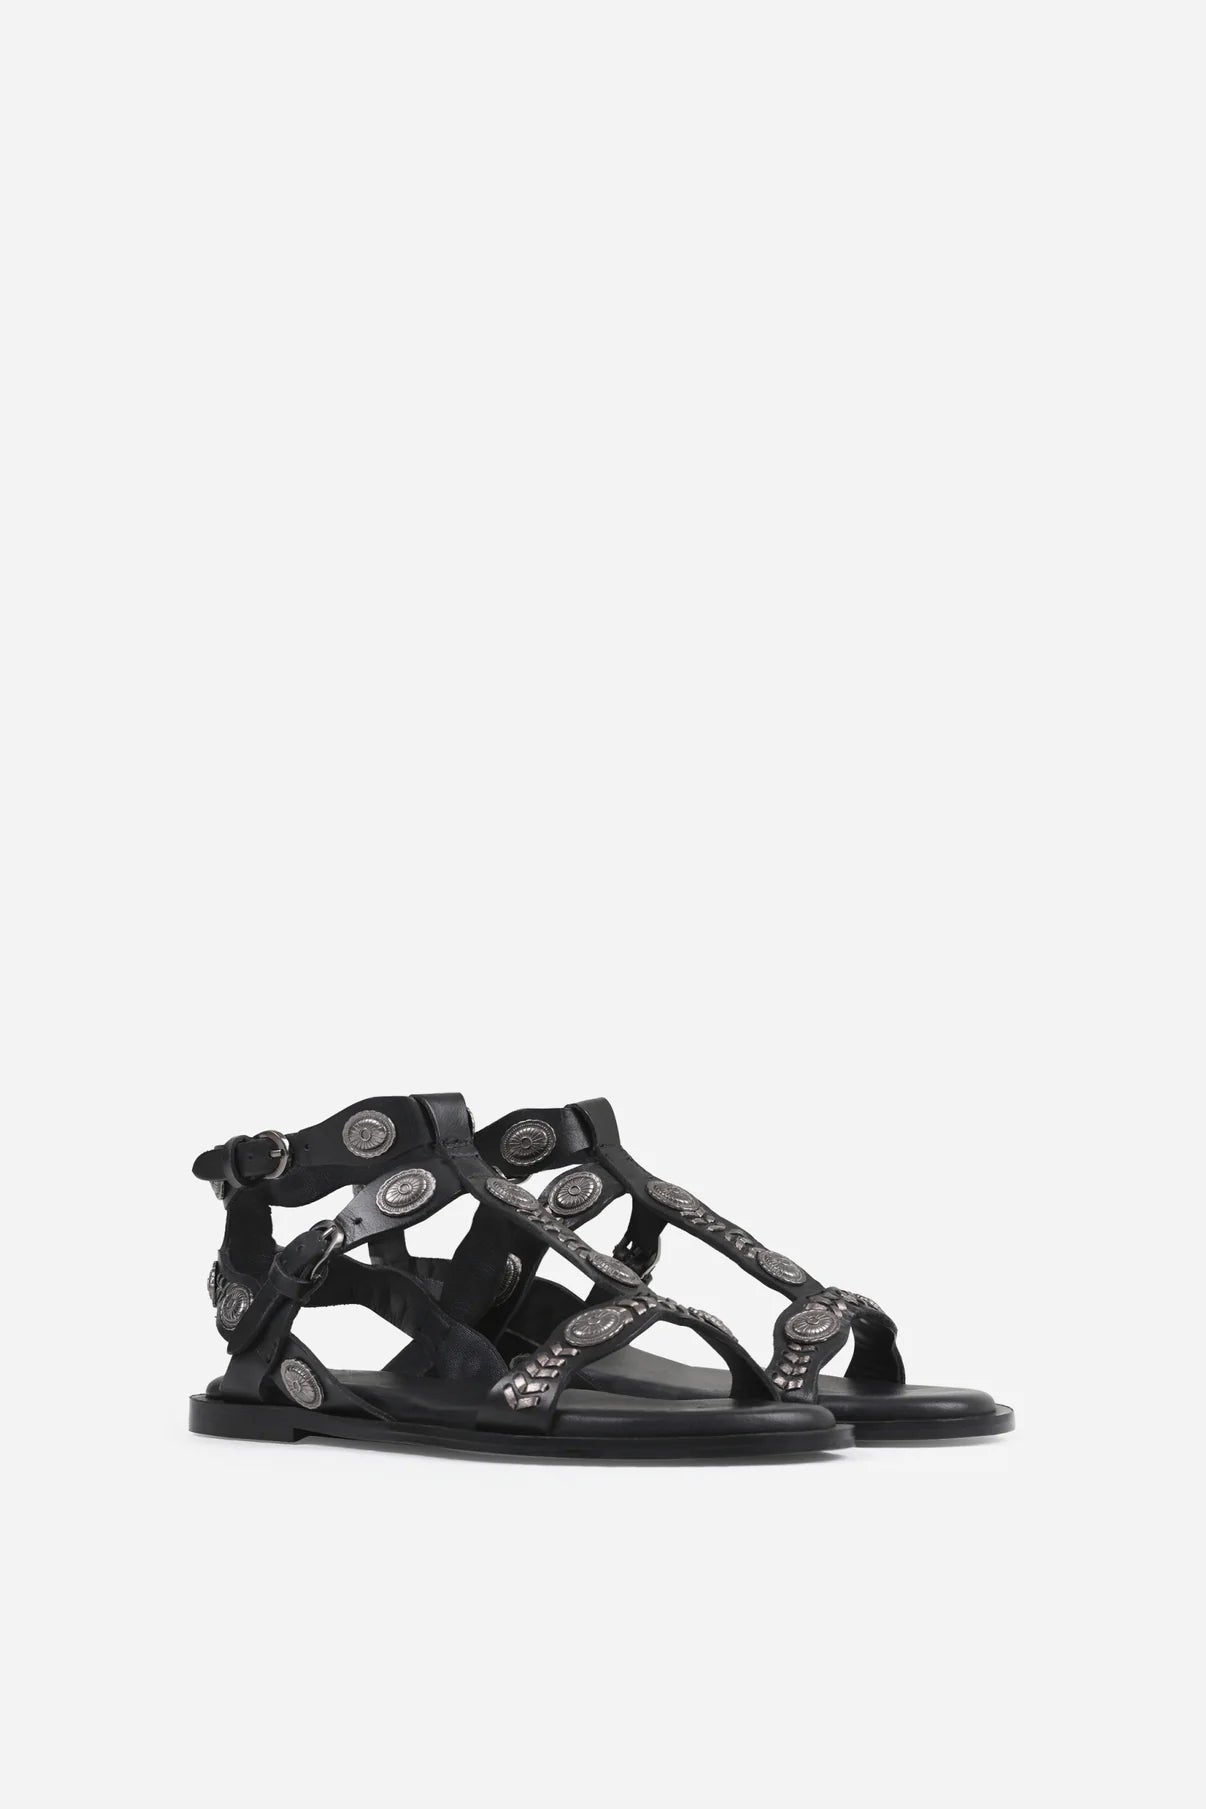 Sky-ler black sandals